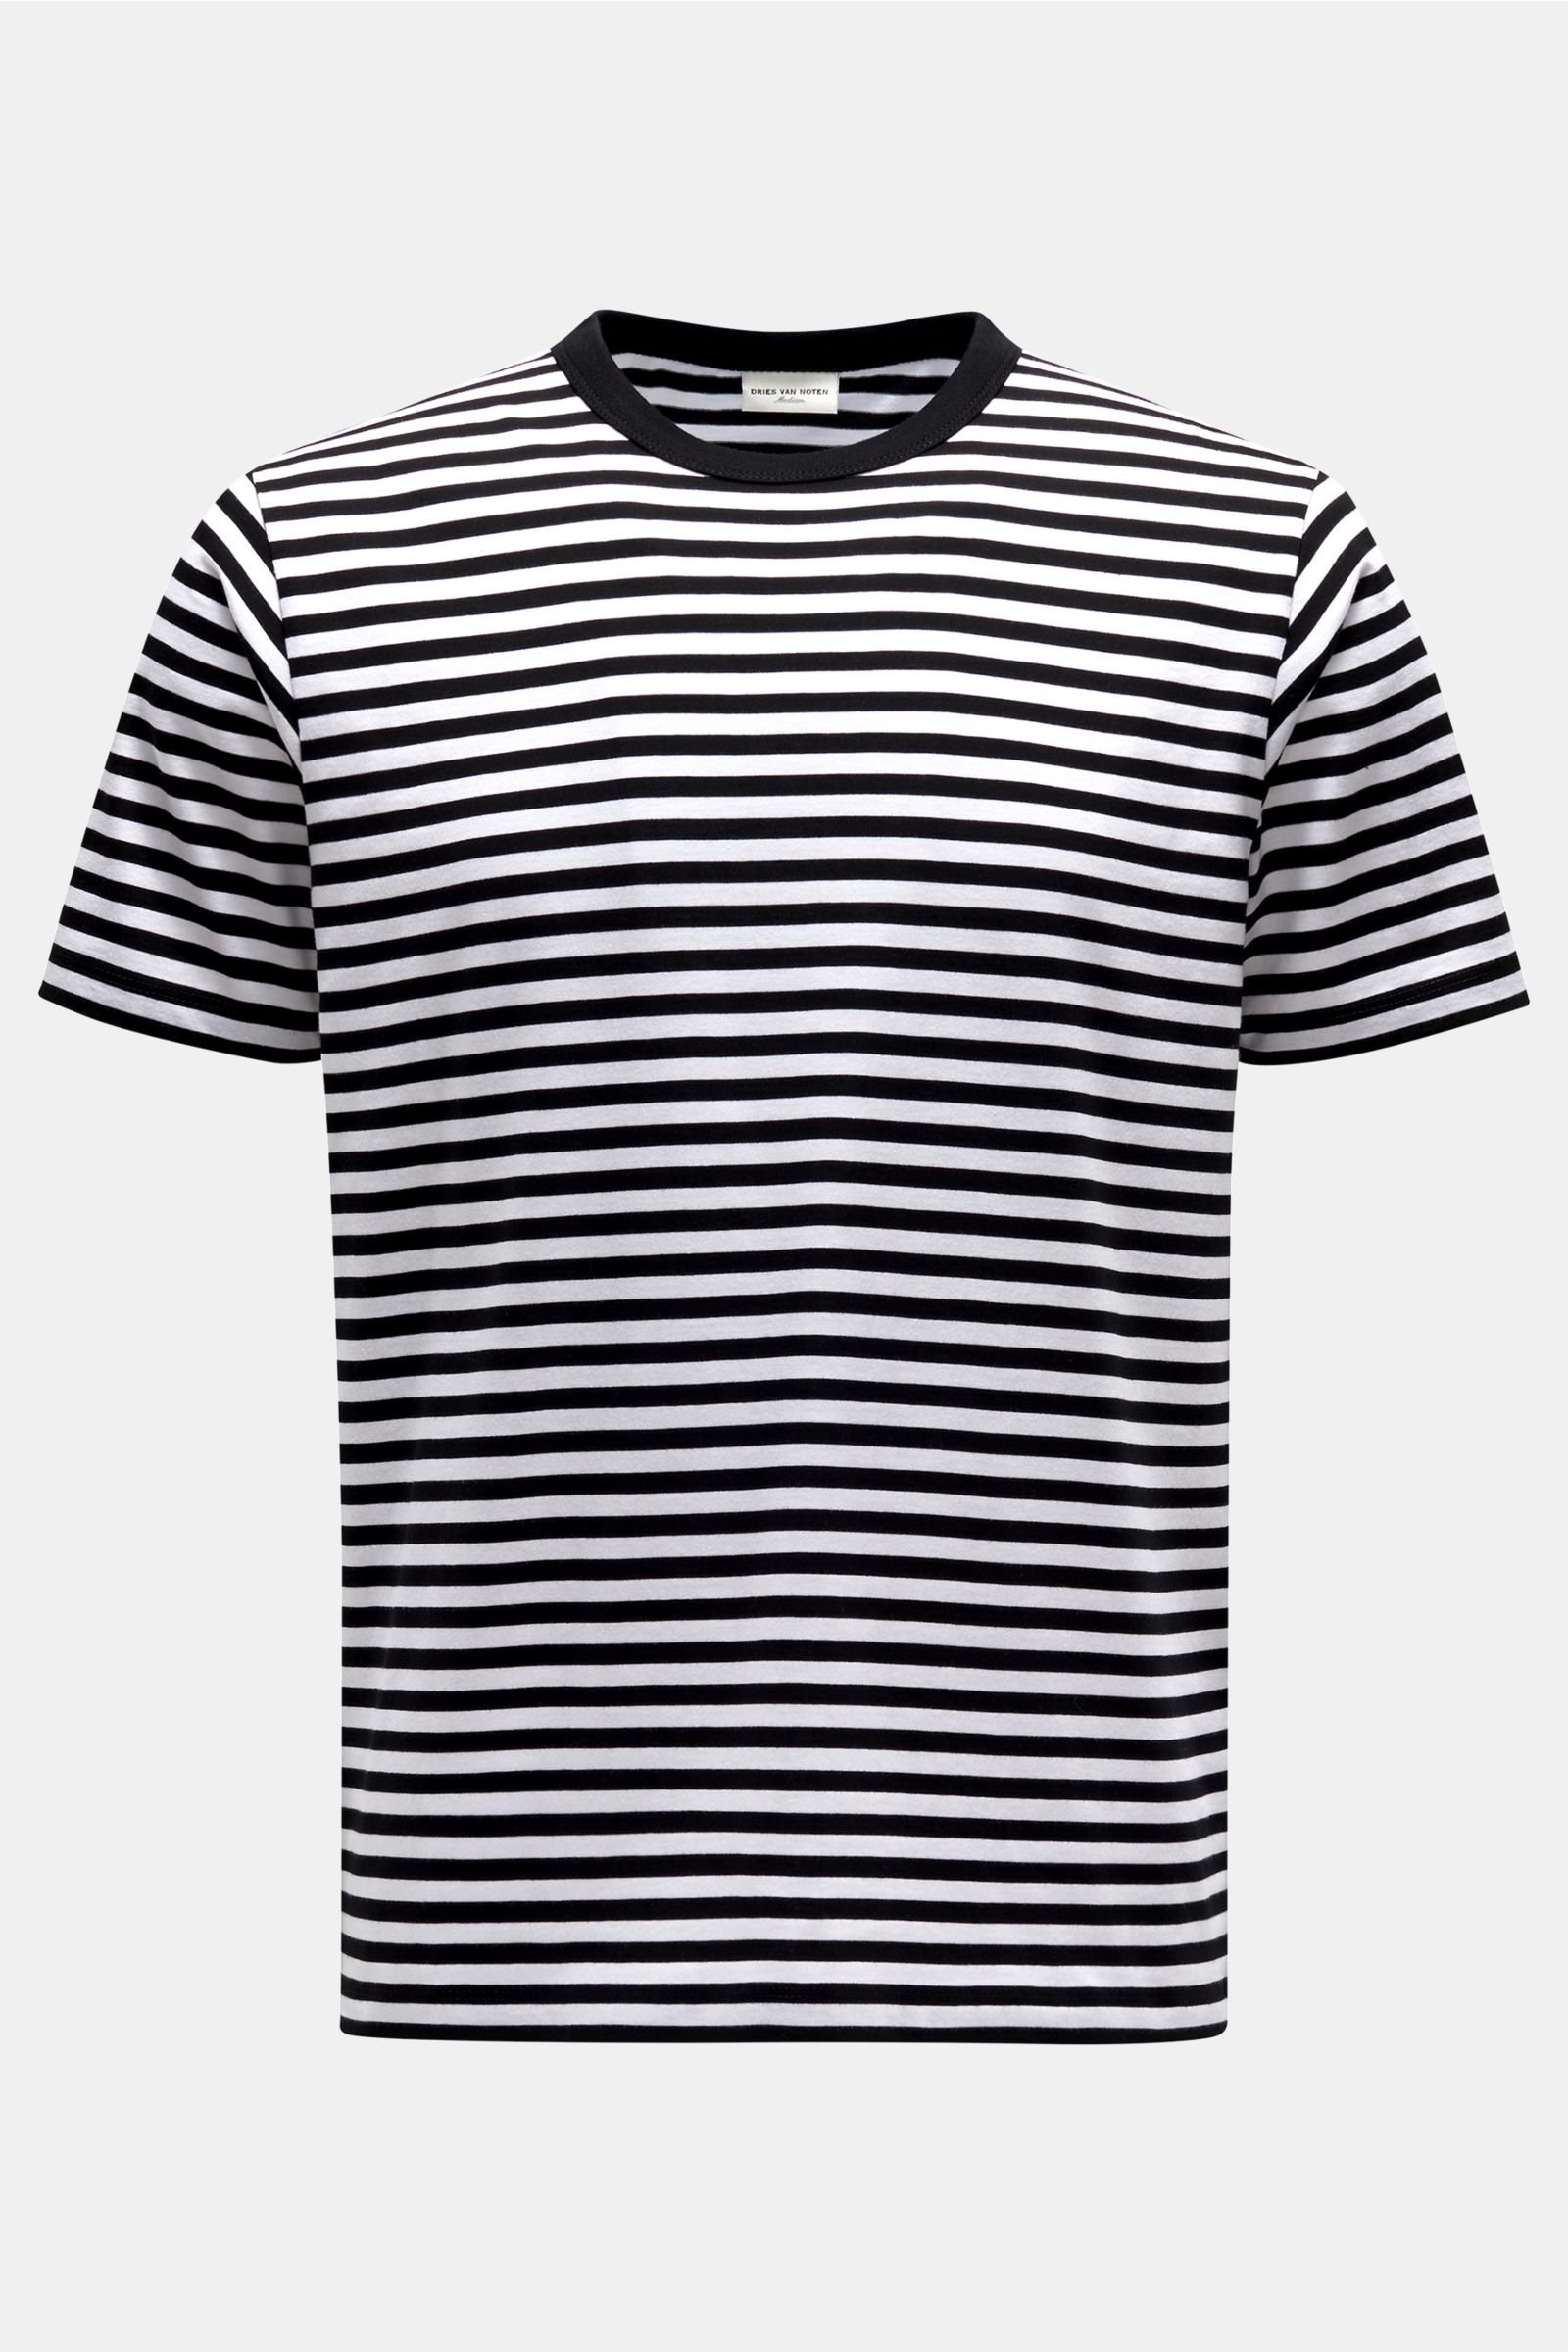 R-Neck T-Shirt schwarz/weiß gestreift